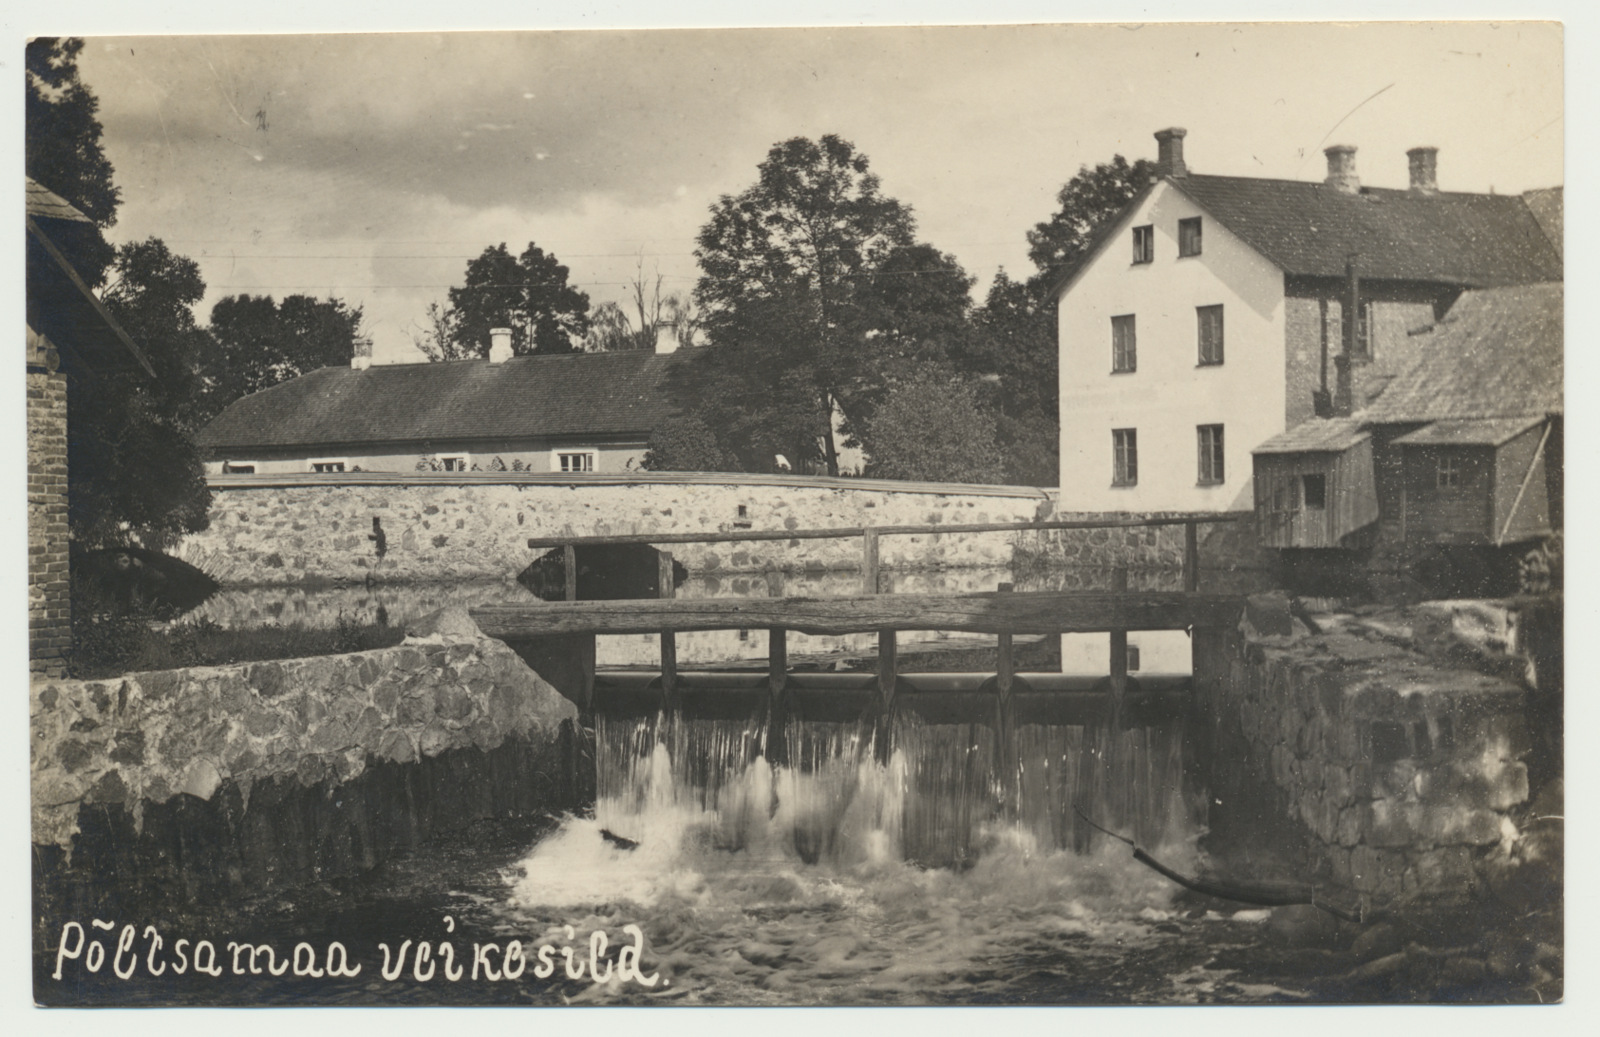 foto, Põltsamaa khk, Põltsamaa, ees Kiisamauru sild, taga Väike sild, u 1930, foto A. Mik